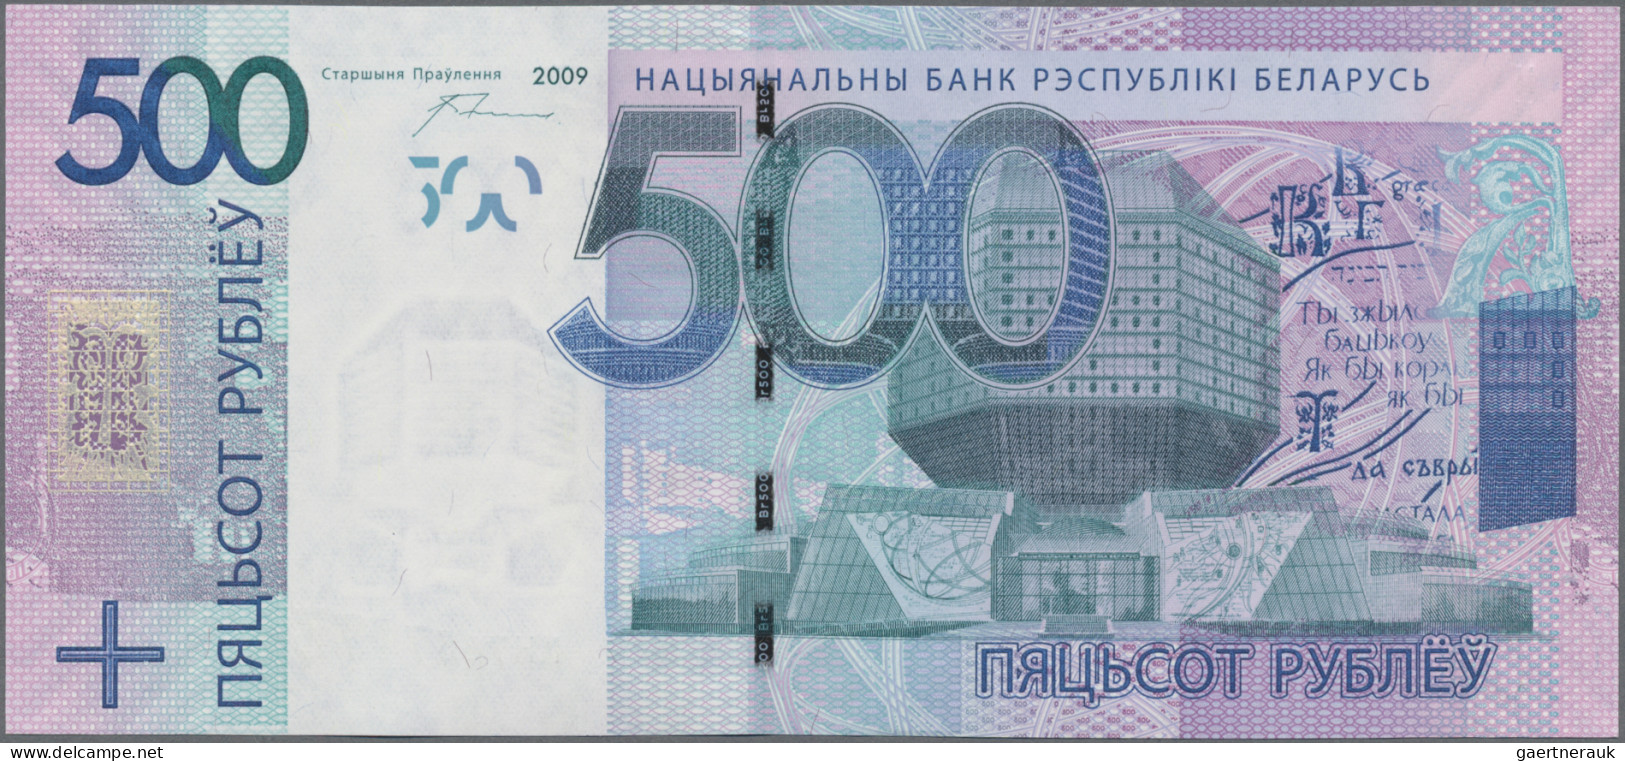 Belarus: National Bank Of Belarus, 500 Rubley 2009 (2016 ND), P.43 In UNC Condit - Belarus